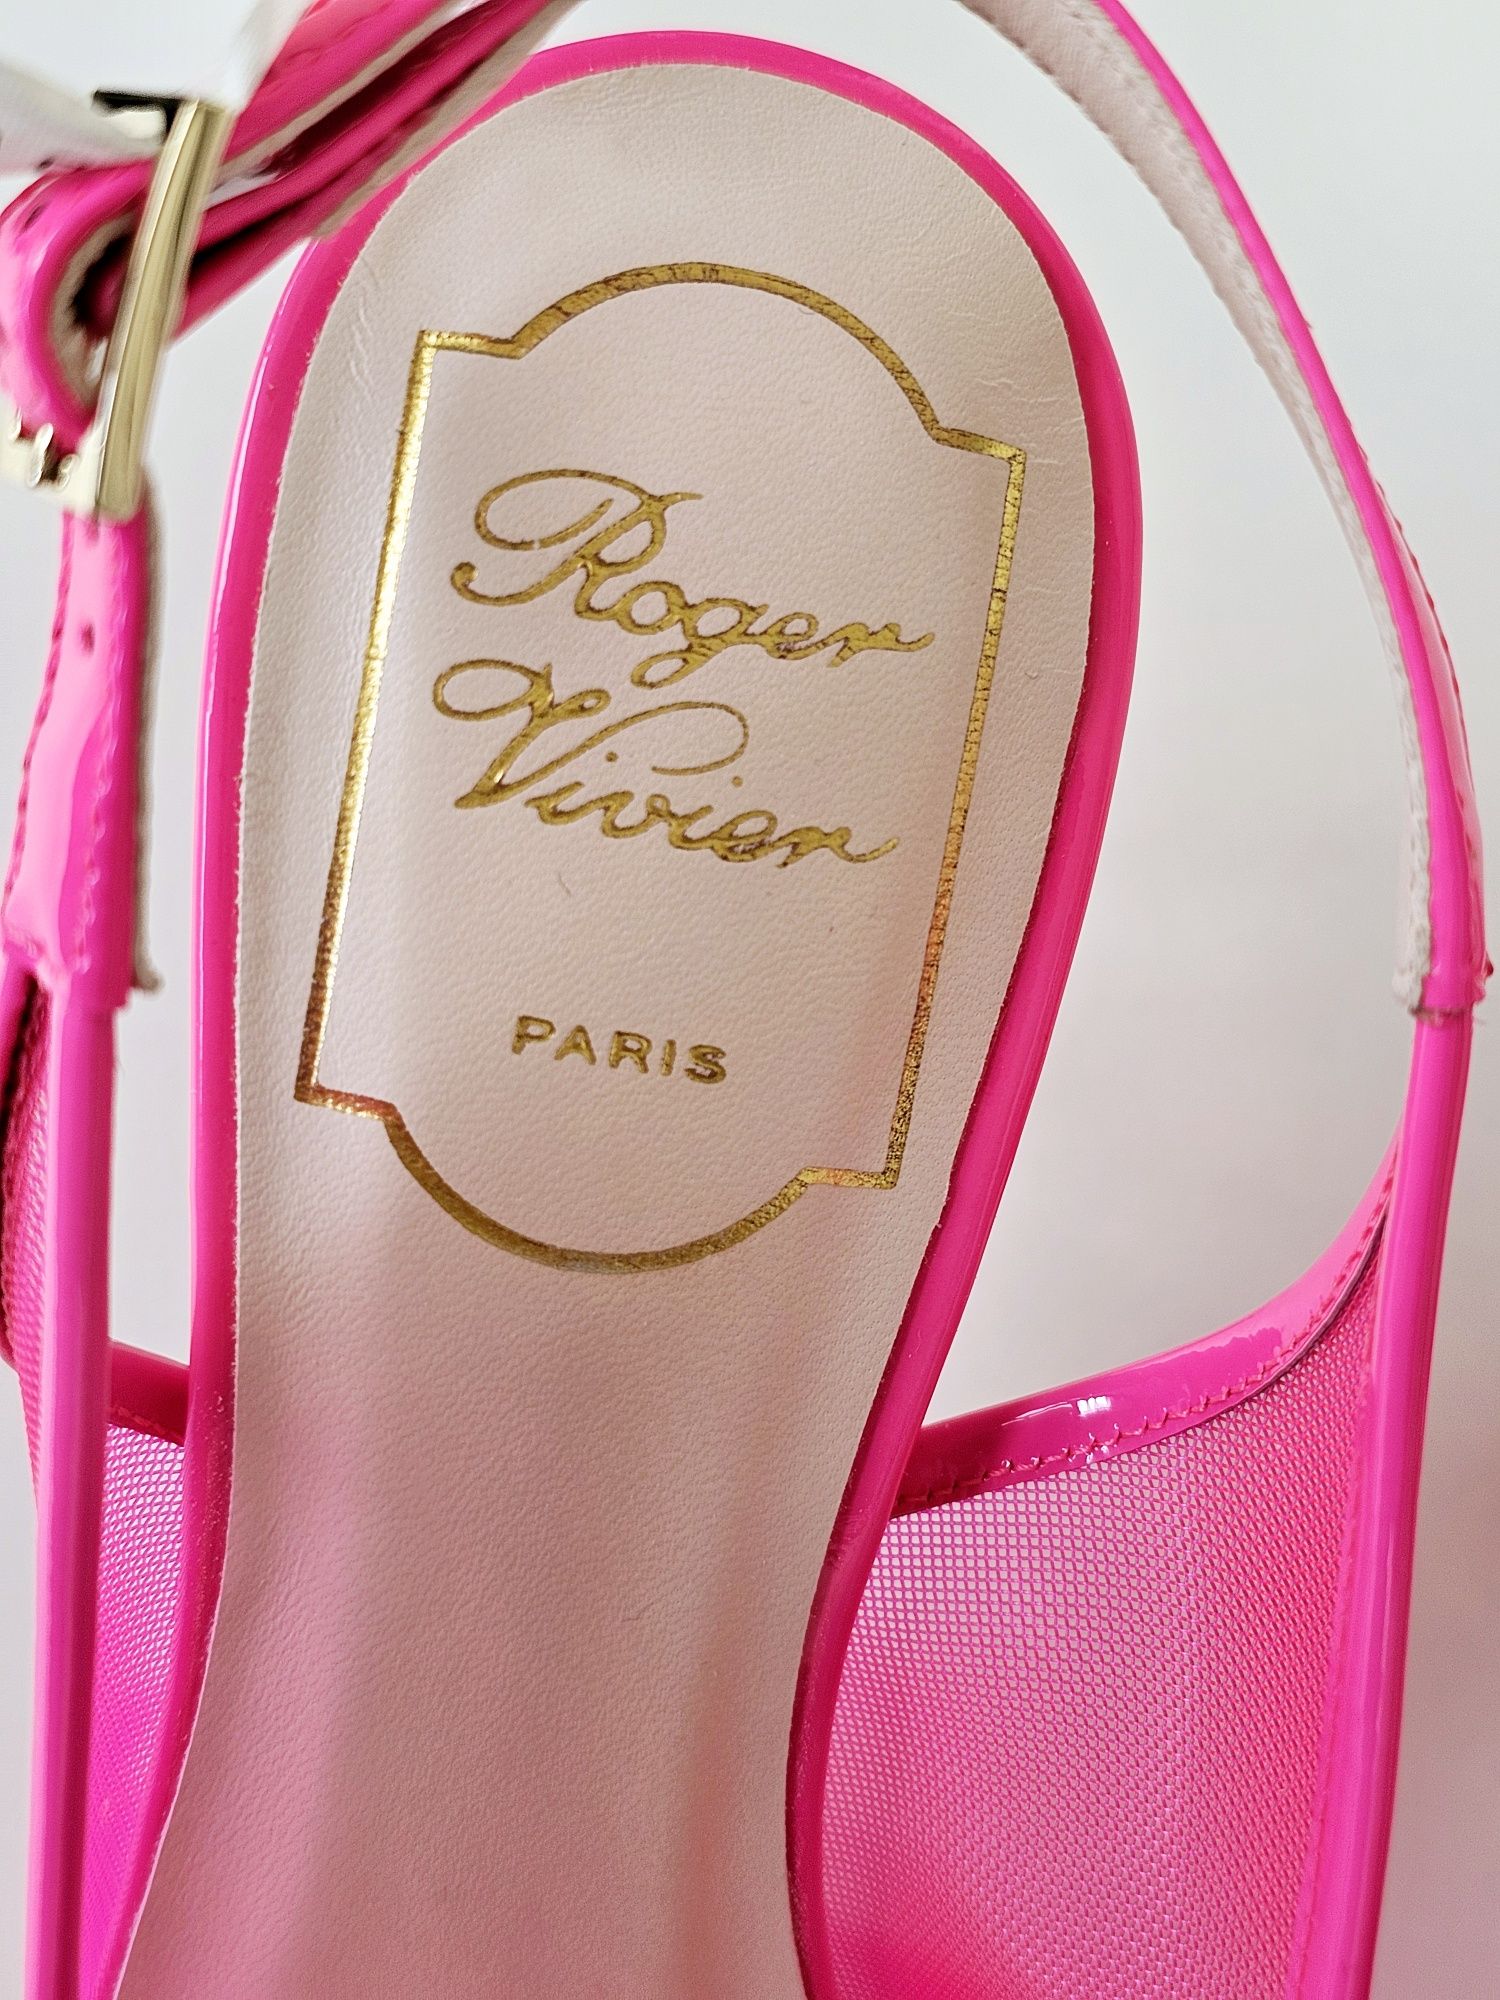 Roger Vivier Paris, Pantofi cu toc si berete, roz, 36.5